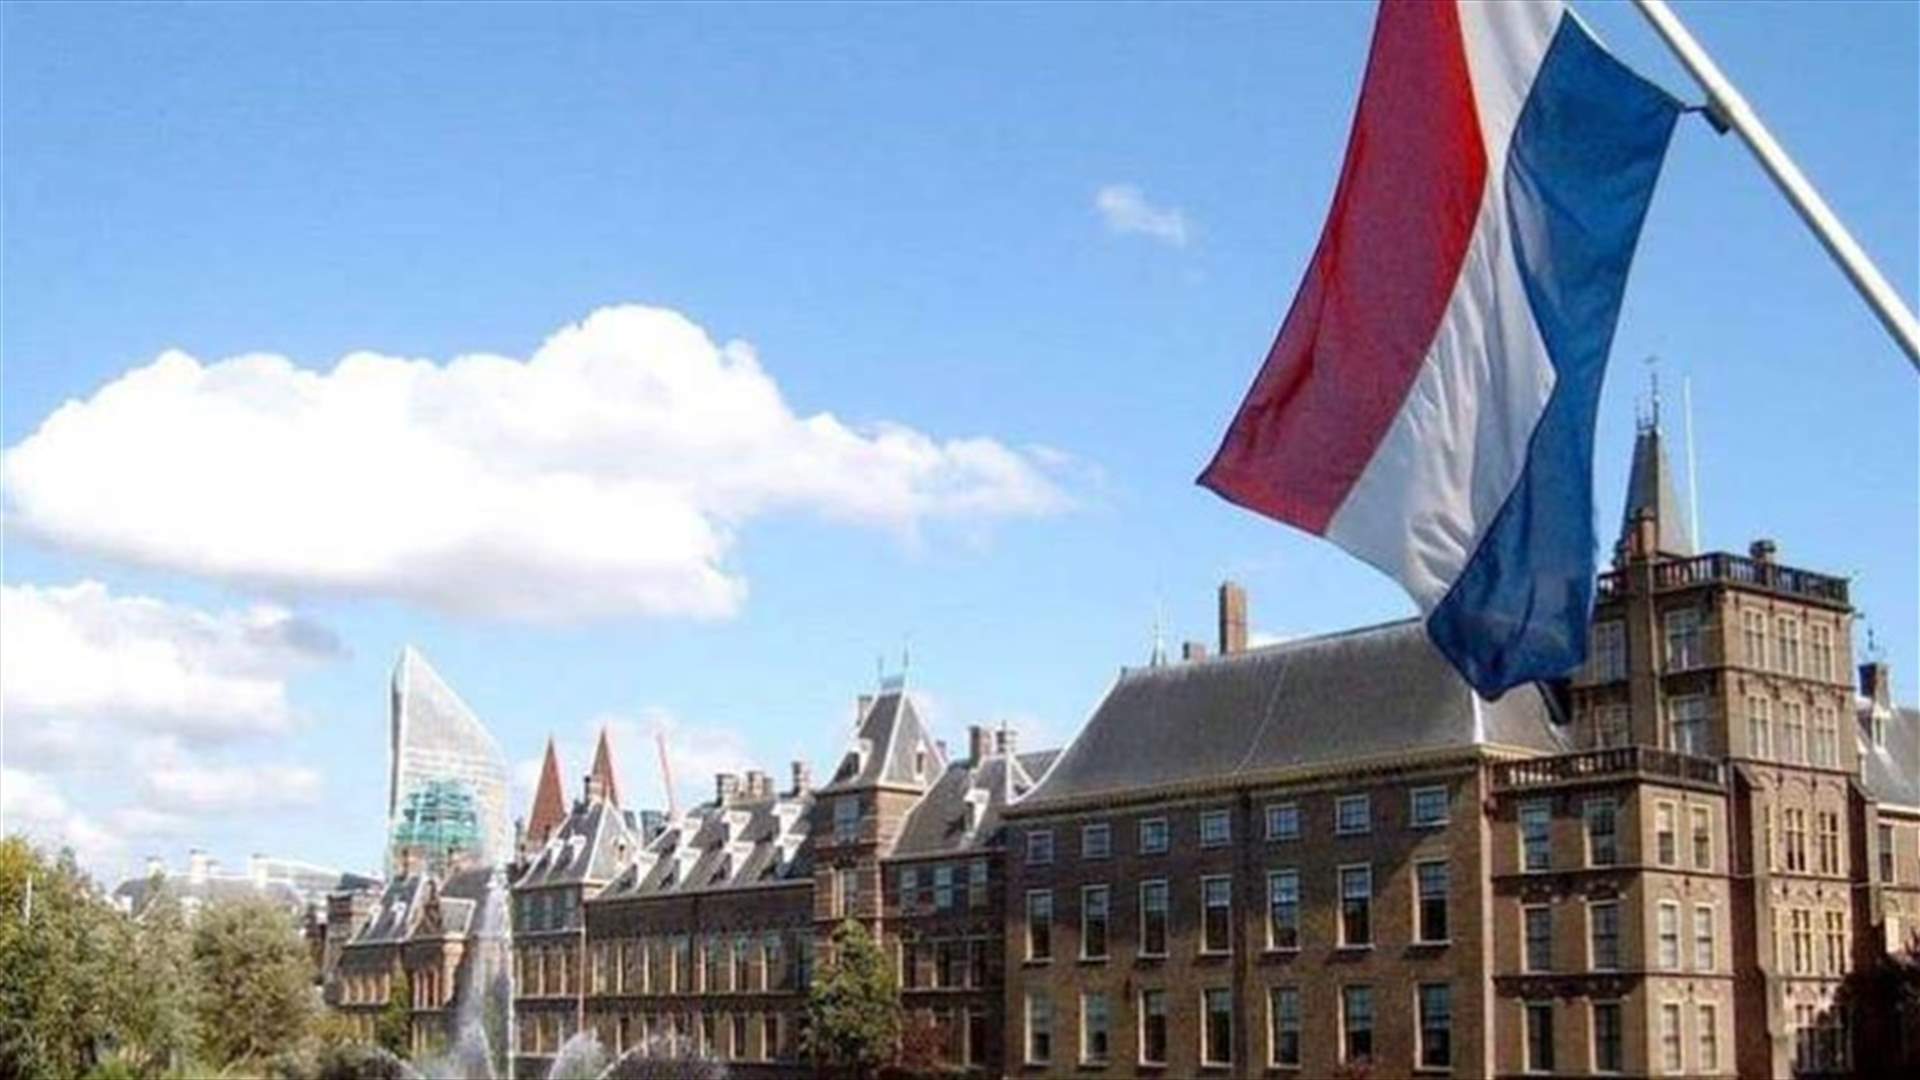 استقالة الحكومة الهولندية على أثر فضيحة إدارية